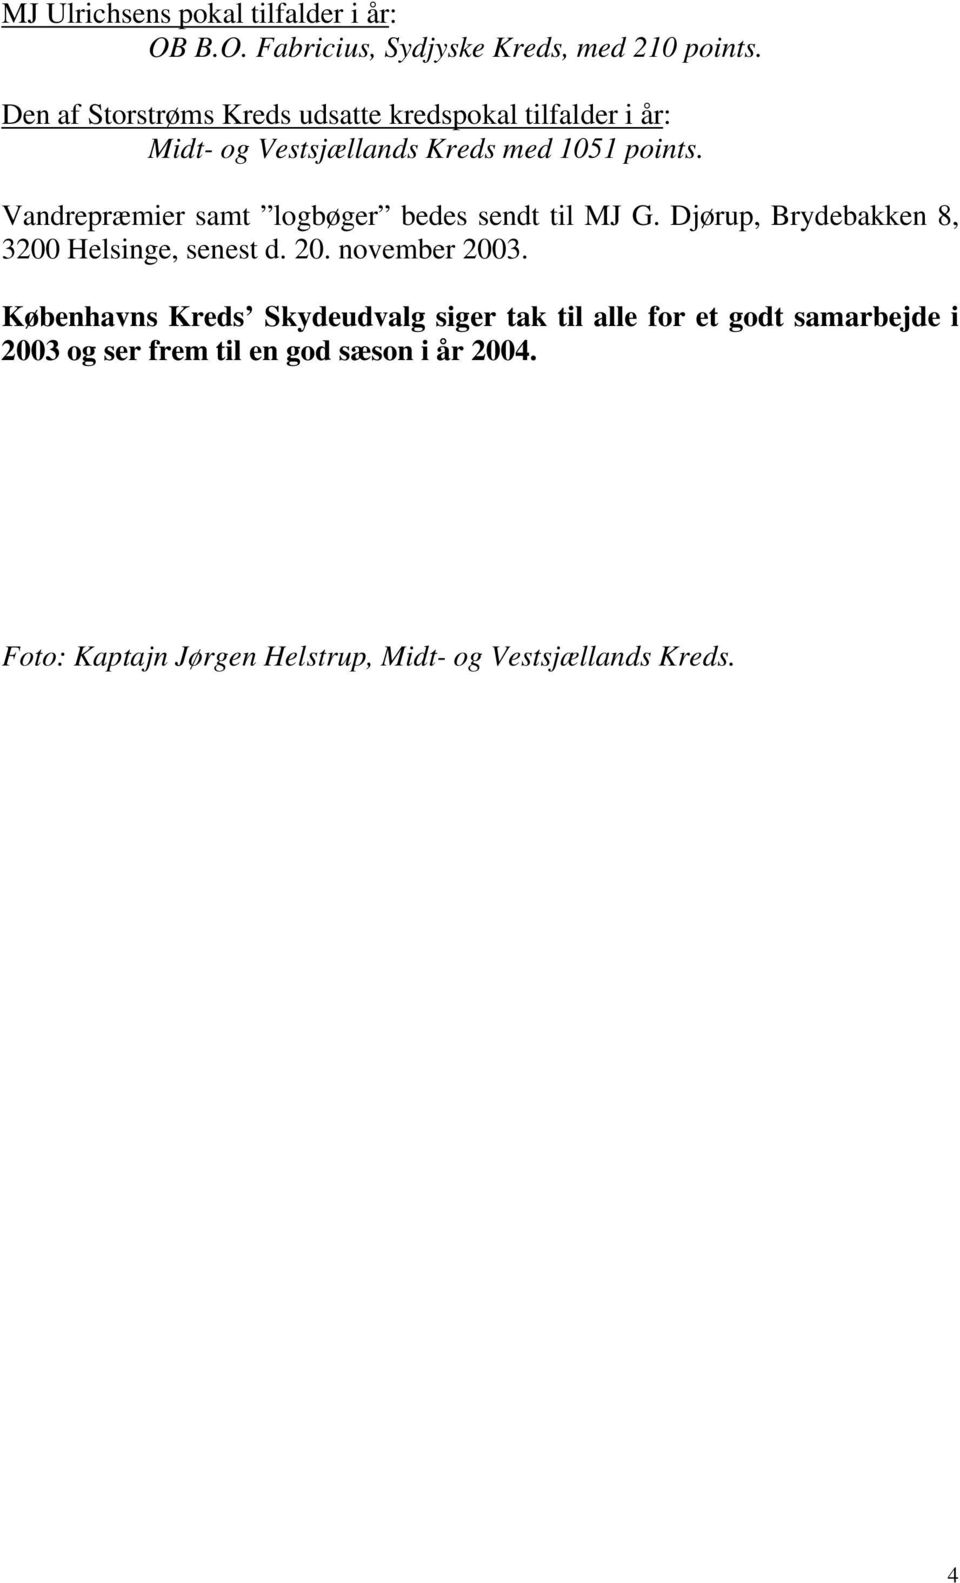 Vandrepræmier samt logbøger bedes sendt til MJ G. Djørup, Brydebakken 8, 3200 Helsinge, senest d. 20. november 2003.